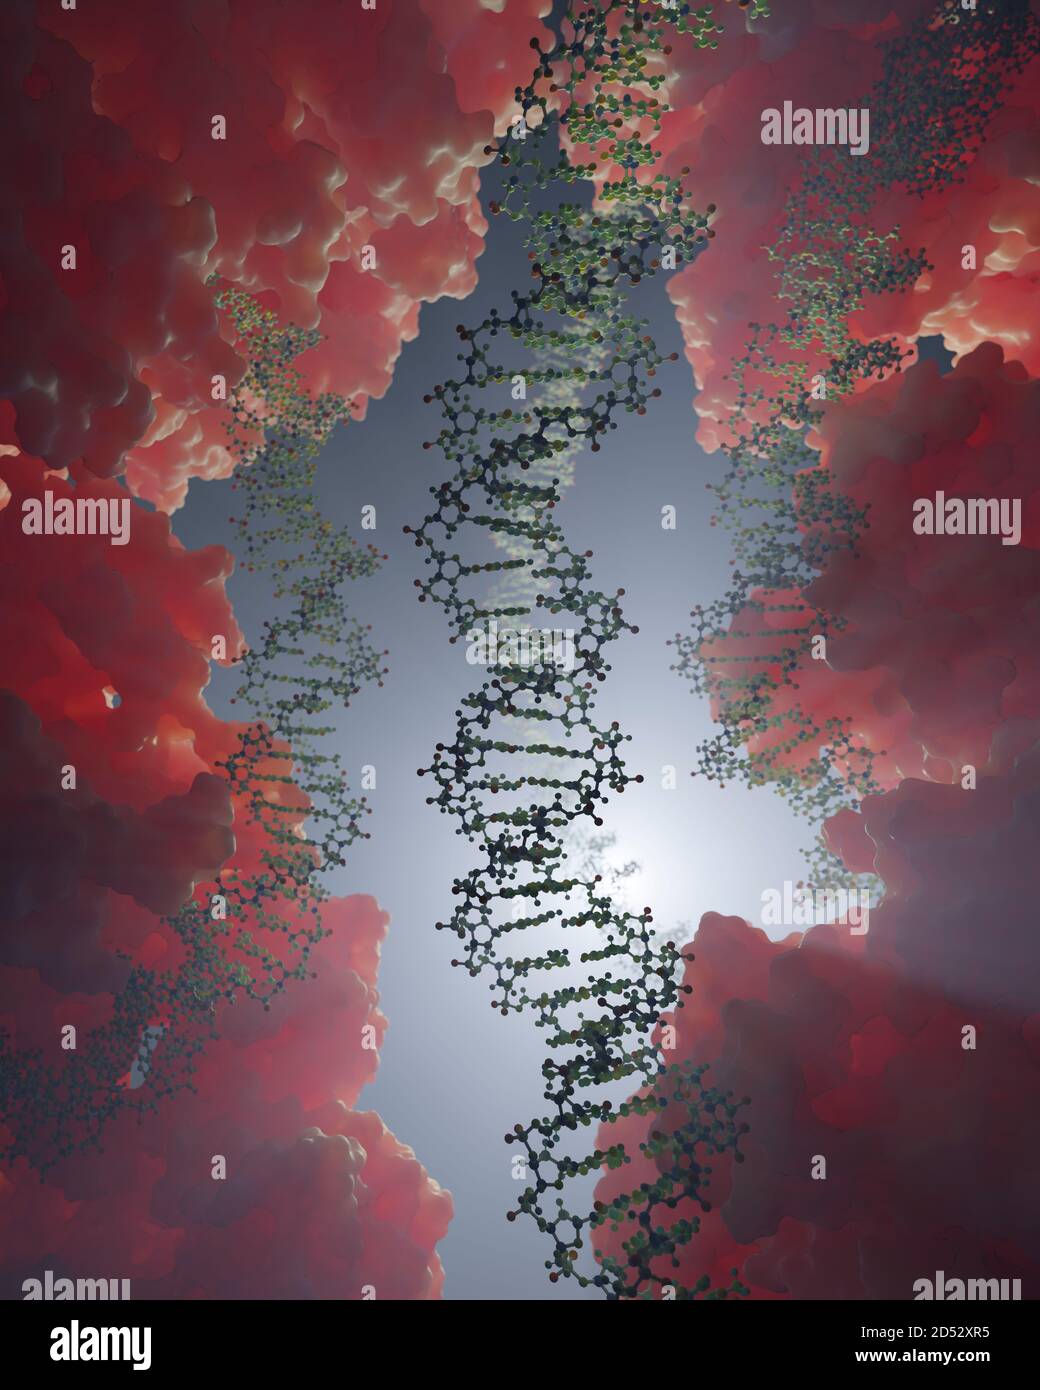 Interaction de l'ADN et des protéines au niveau moléculaire. Les protéines liant l'ADN contrôlent la transcription, l'expression des gènes, etc., à partir des données scientifiques de l'APB Banque D'Images